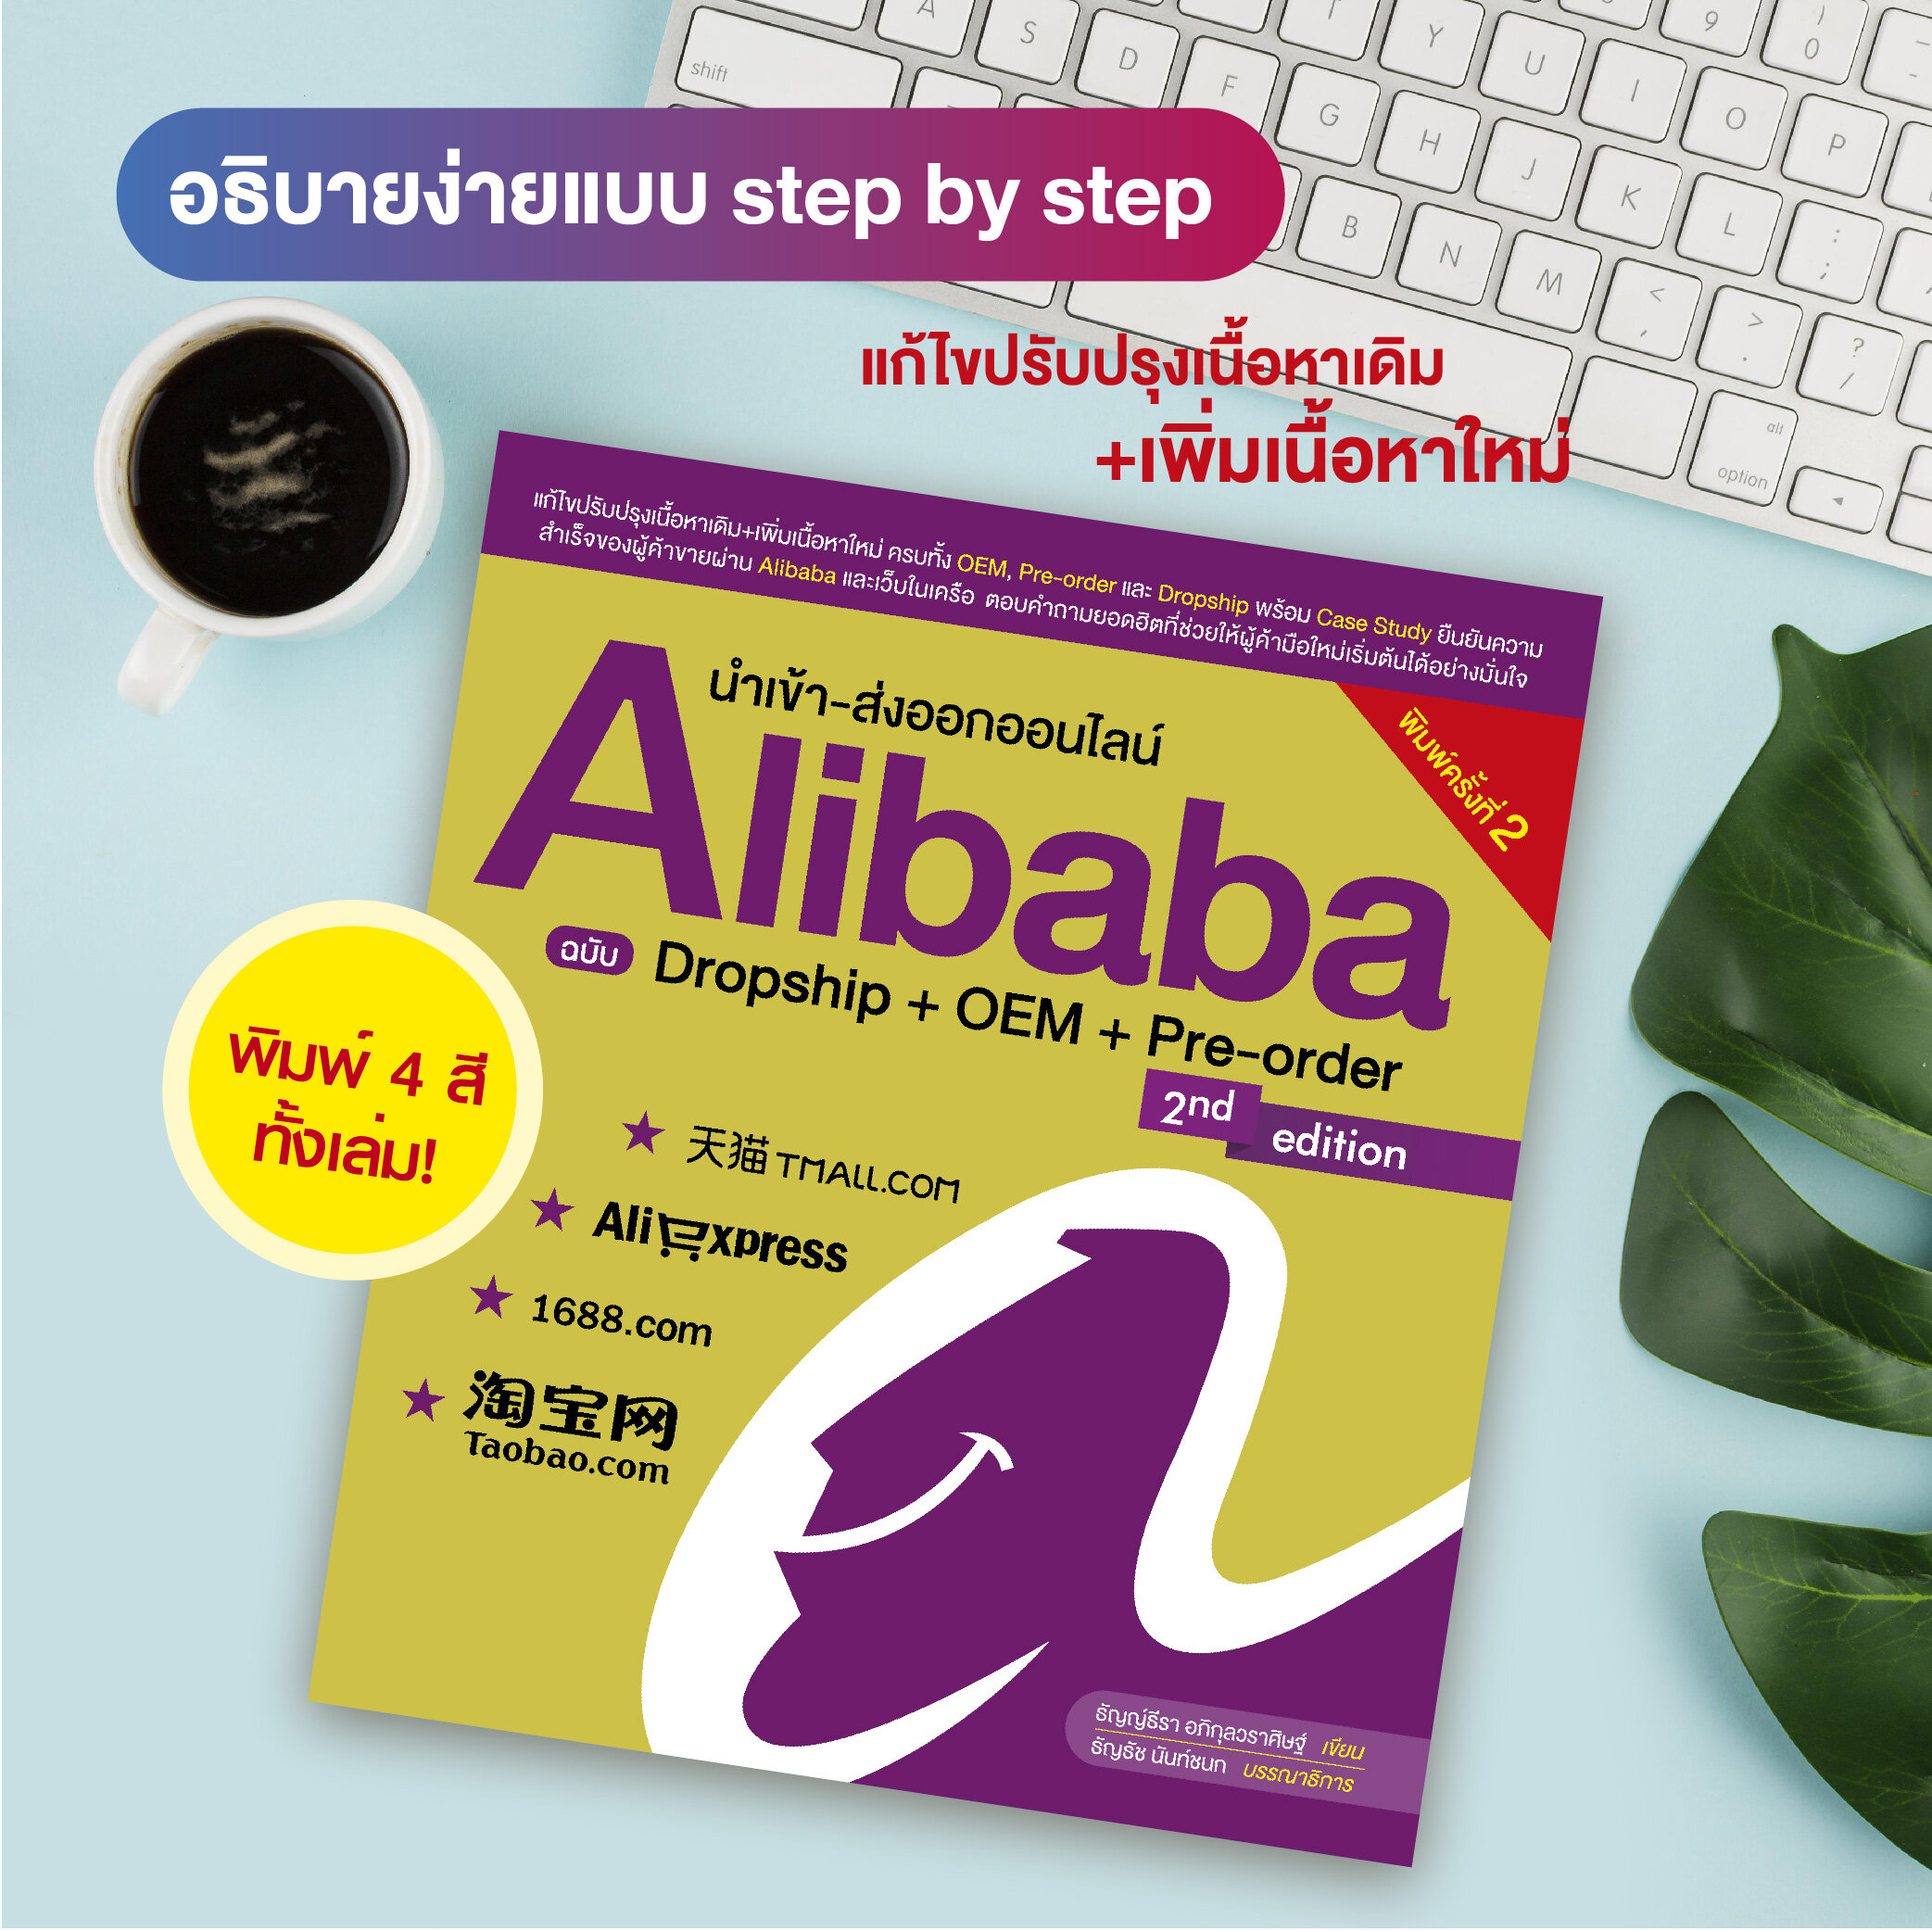 หนังสือ นำเข้า-ส่งออกออนไลน์ Alibaba ฉบับ Dropship + OEM + Pre-order (สำนักพิมพ์ WITTY GROUP)